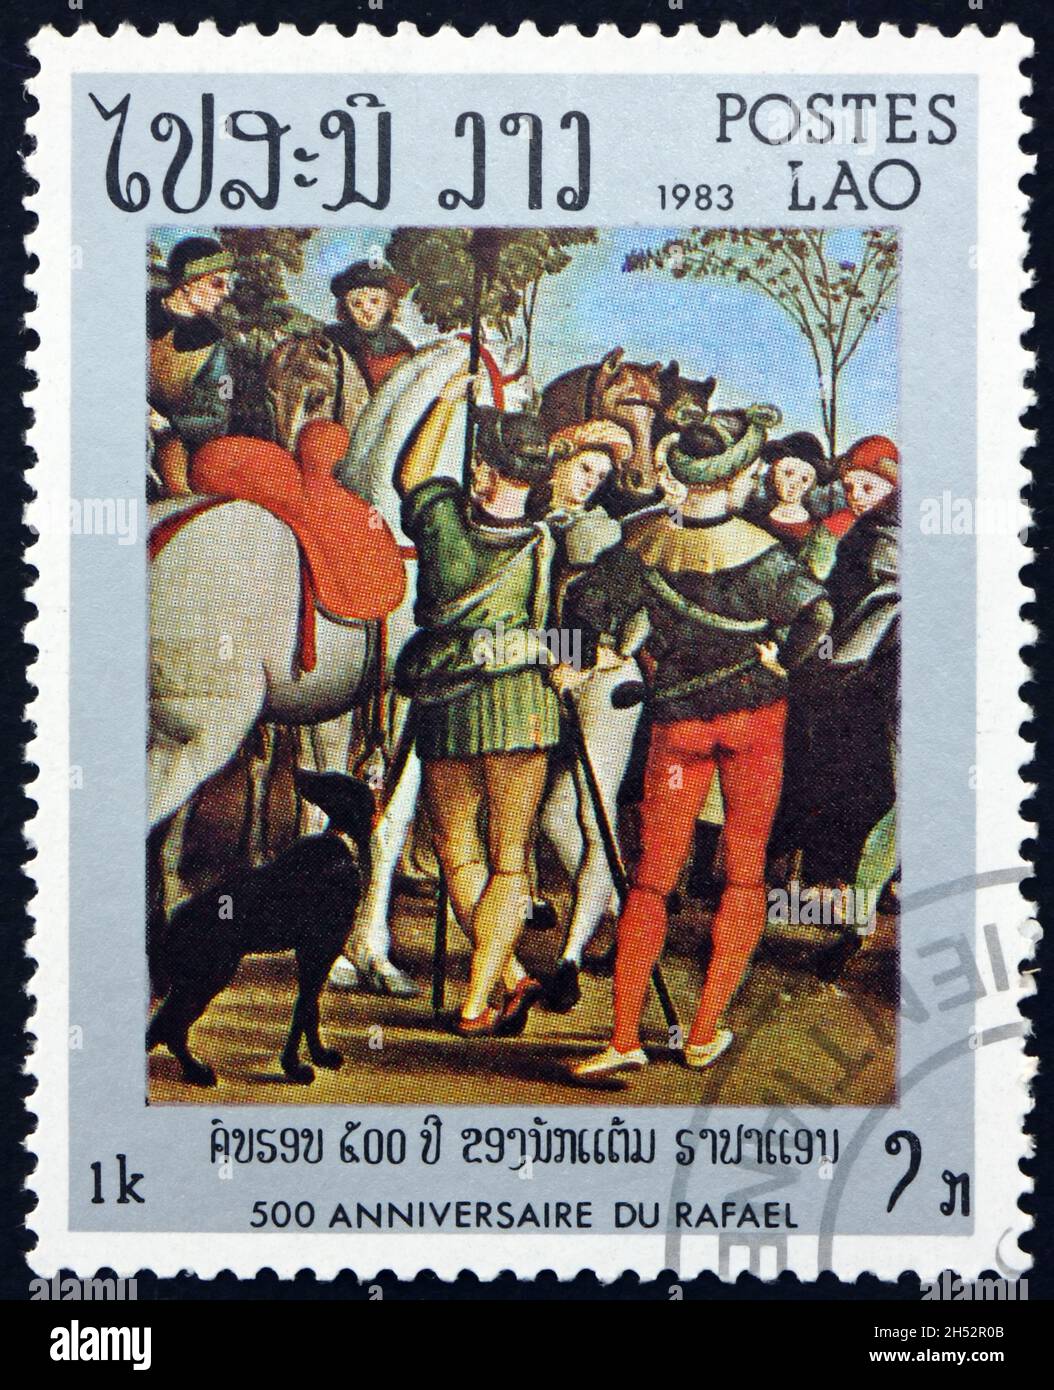 LAOS - UM 1983: Eine in Laos gedruckte Briefmarke zeigt die Anbetung der Könige, Vatikan, Florenz, Gemälde von Raphael, um 1983 Stockfoto